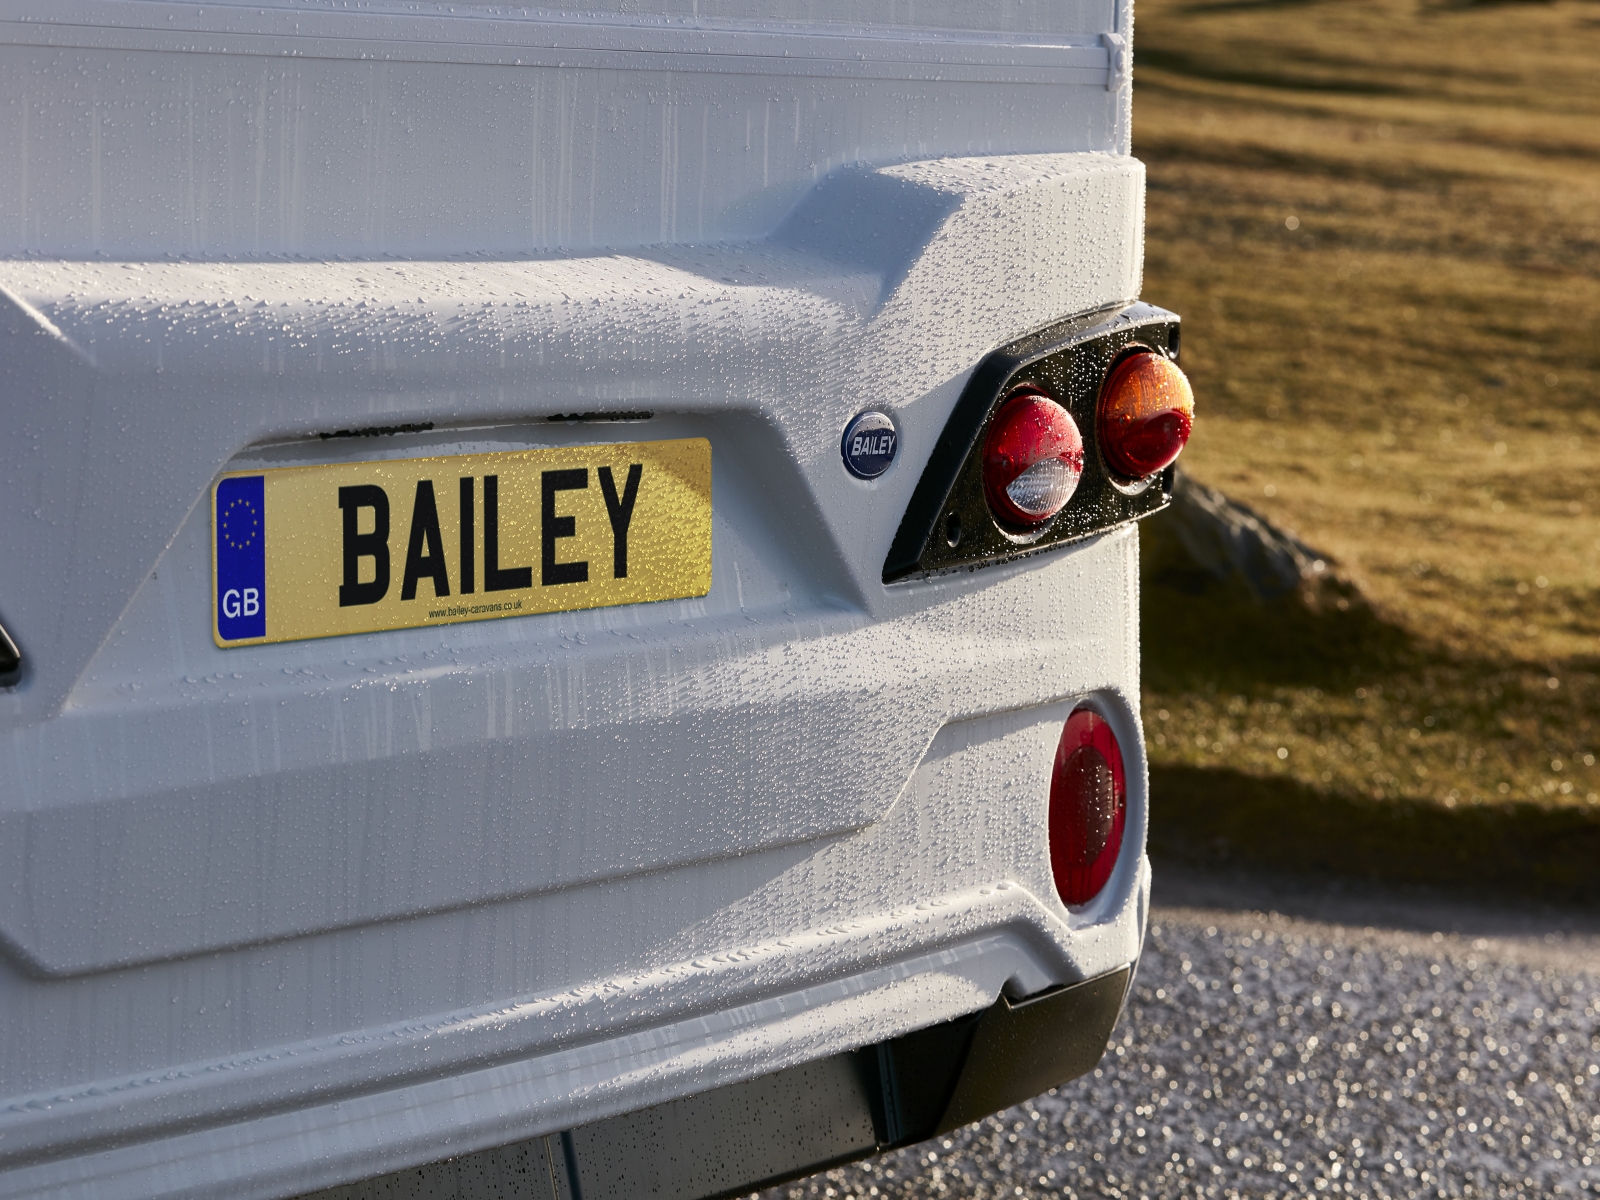 Bailey 74-4 image